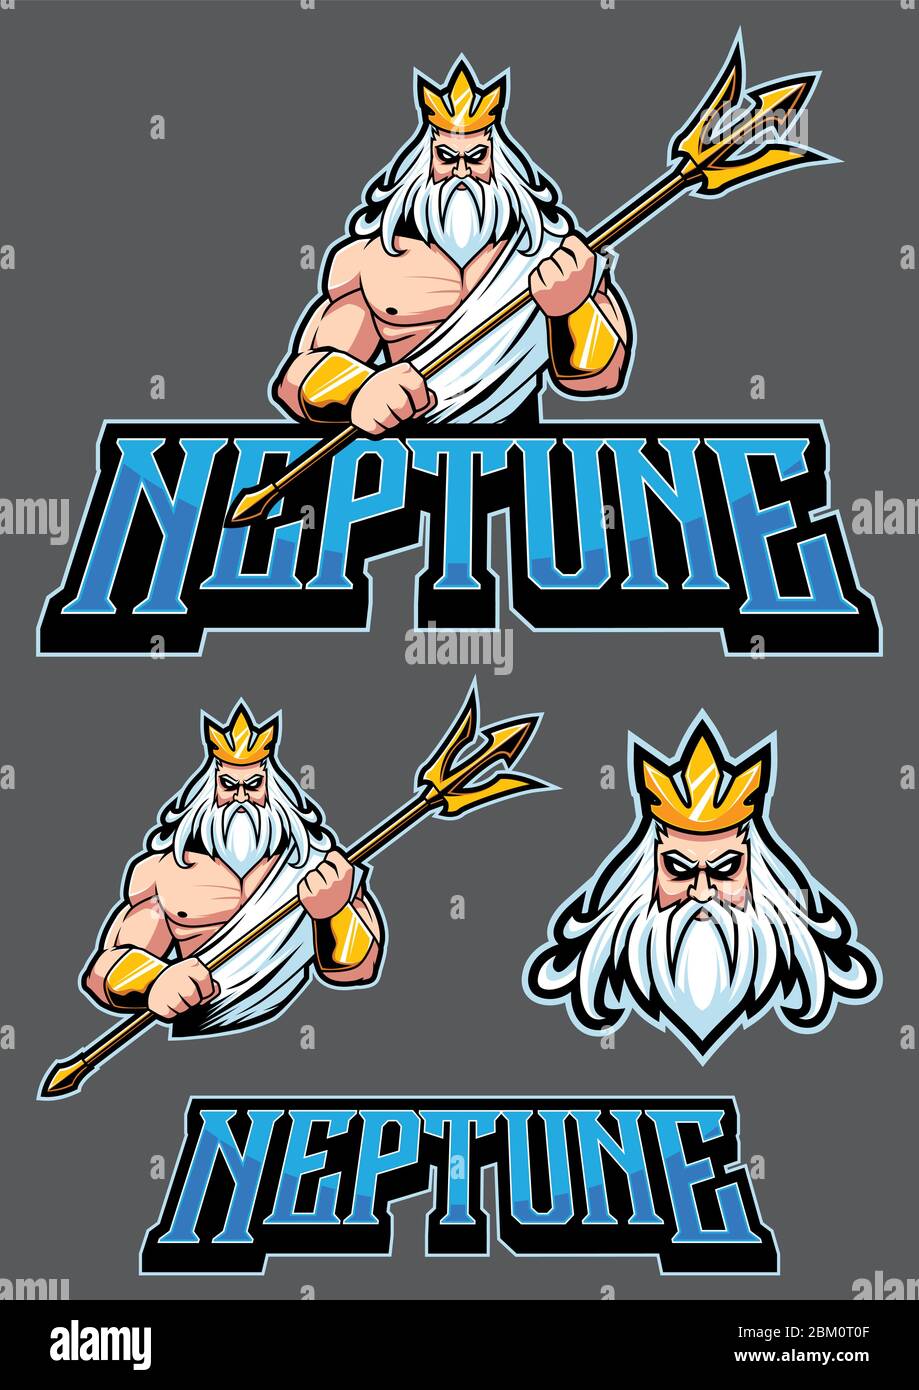 Neptuno Poseidón mascota Ilustración del Vector